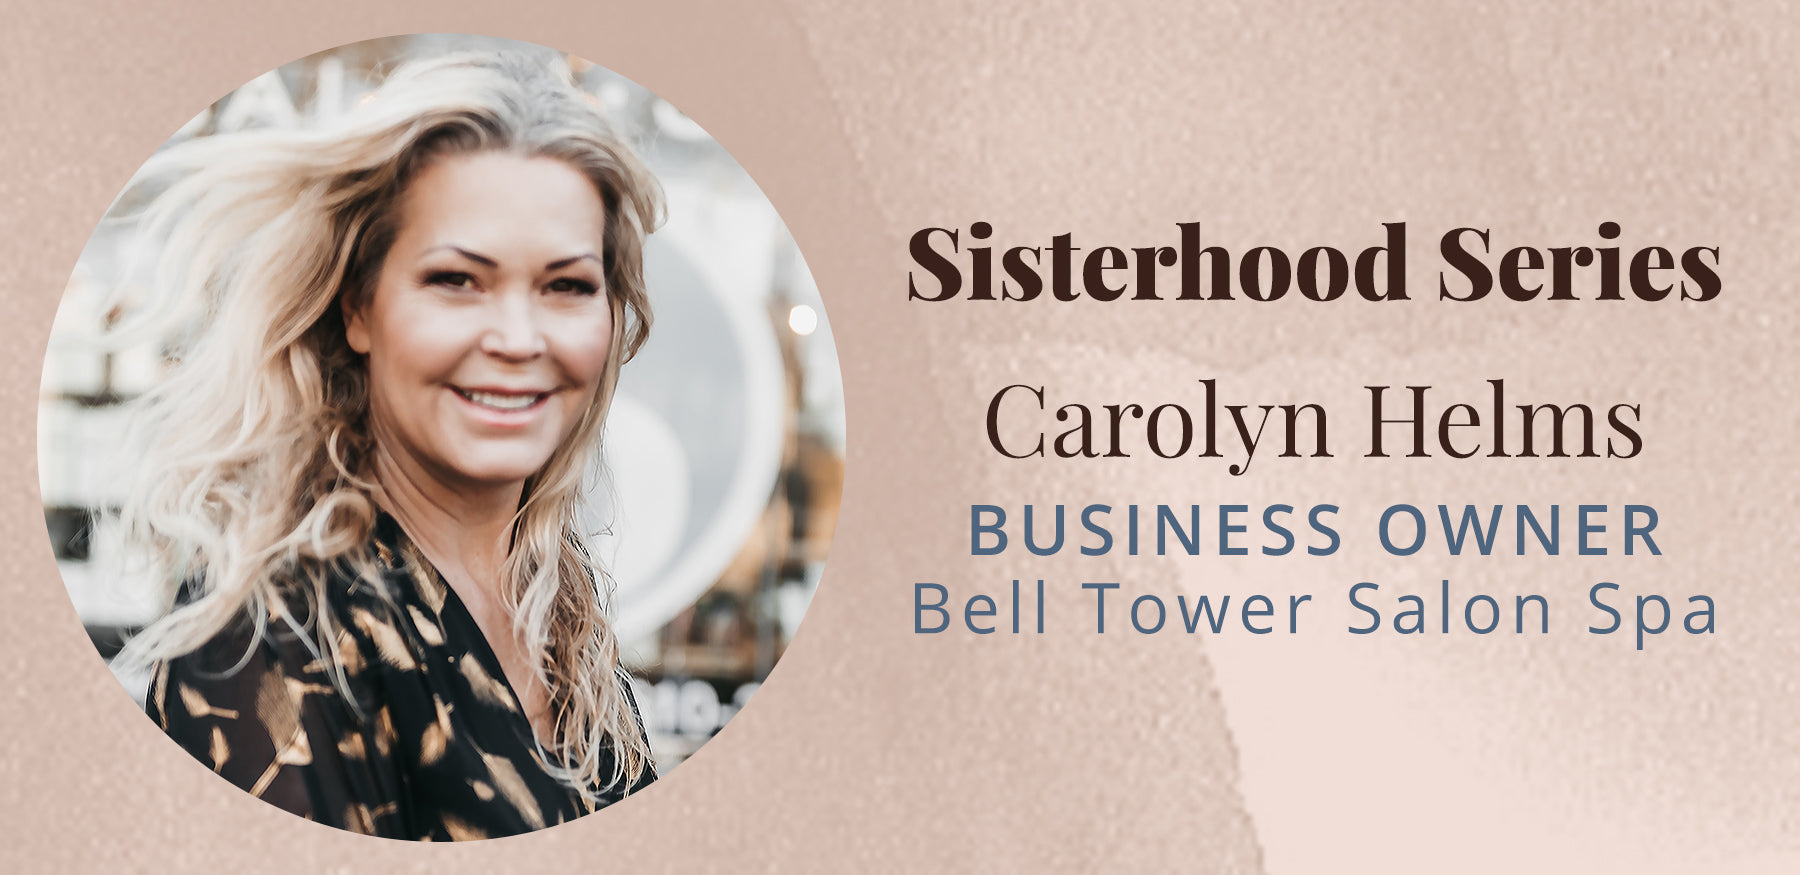 <!--The Sisterhood Series with Carolyn Helms-->